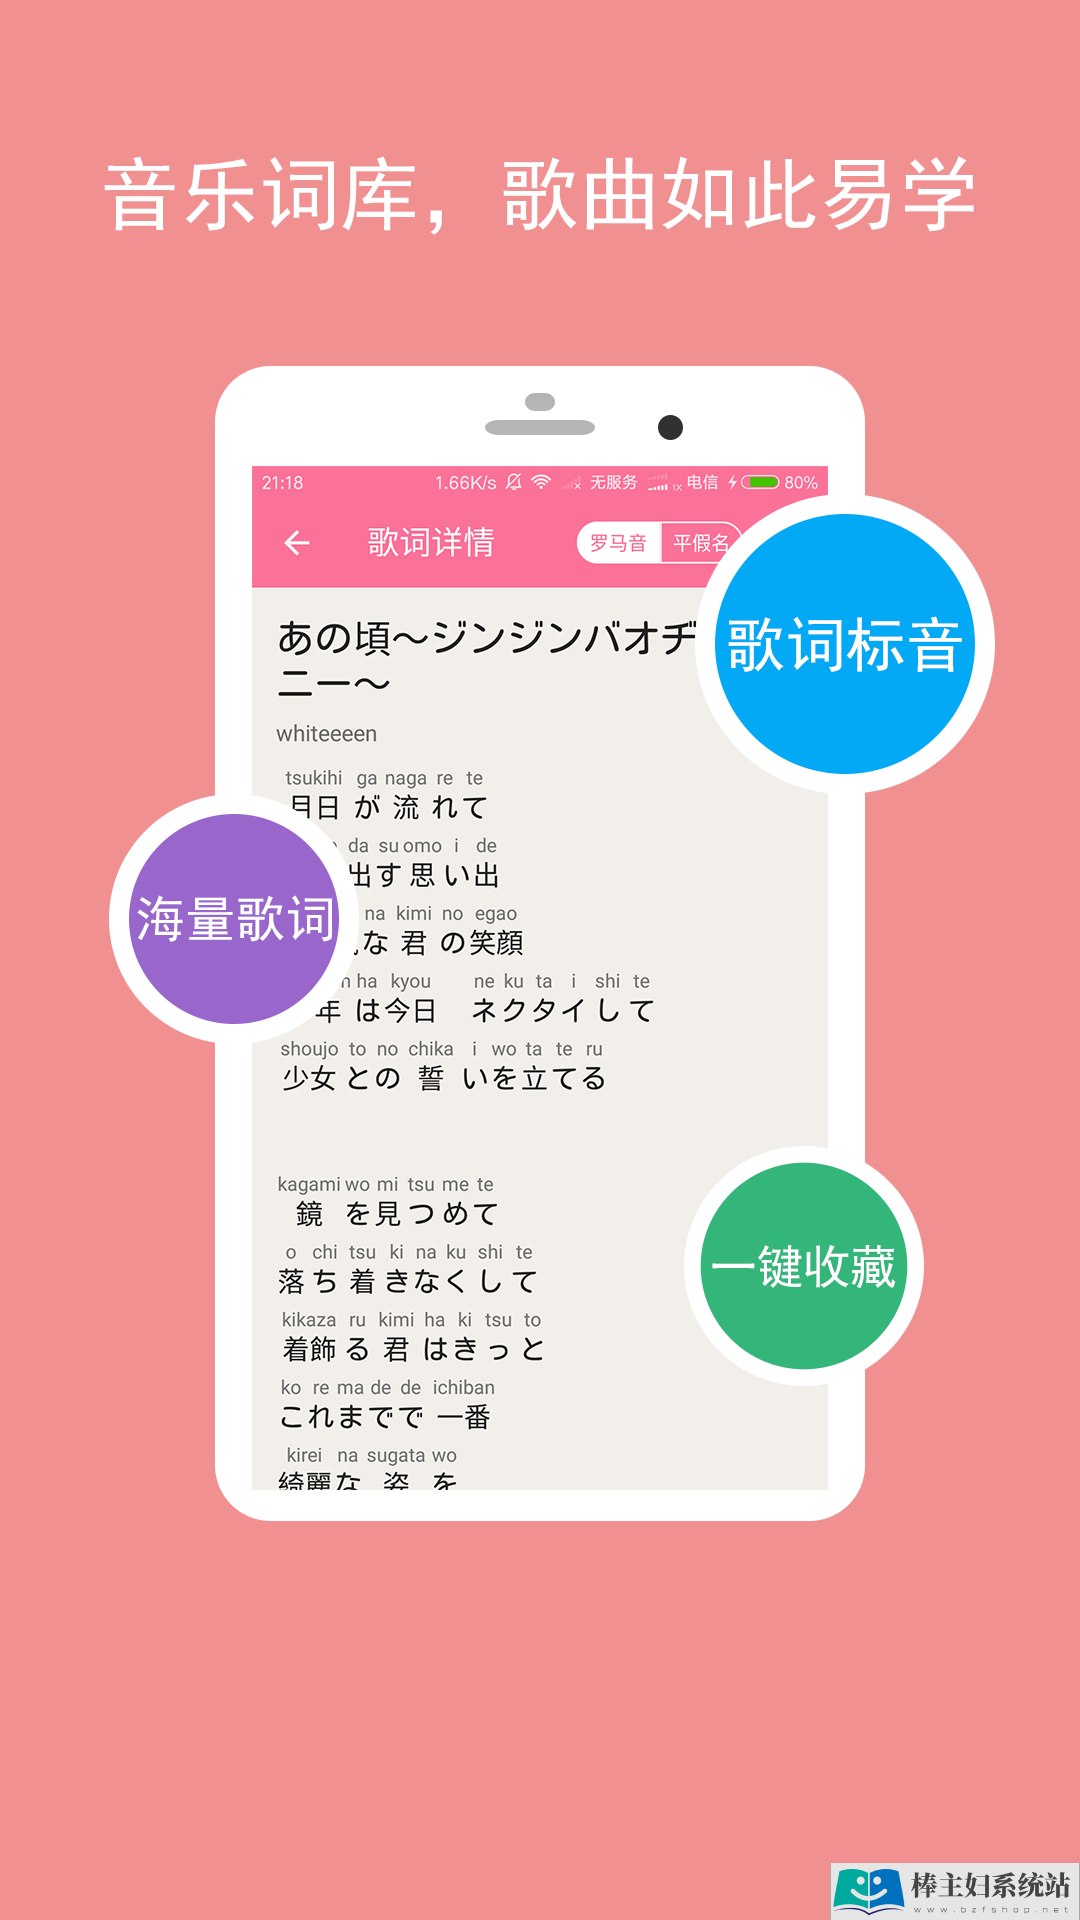 卡卡日语app官方手机版下载